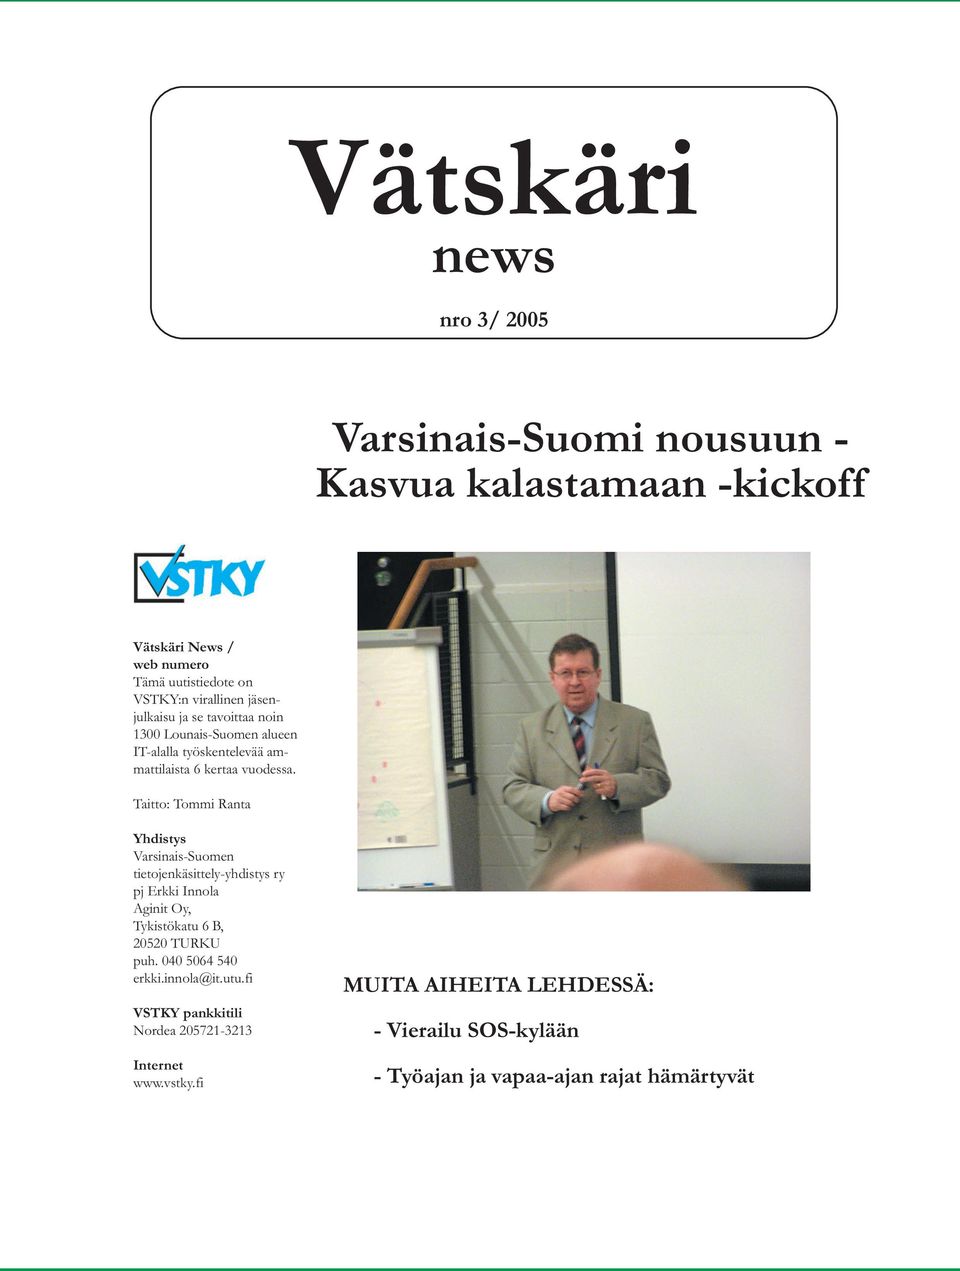 Taitto: Tommi Ranta Yhdistys Varsinais-Suomen tietojenkäsittely-yhdistys ry pj Erkki Innola Aginit Oy, Tykistökatu 6 B, 20520 TURKU puh.